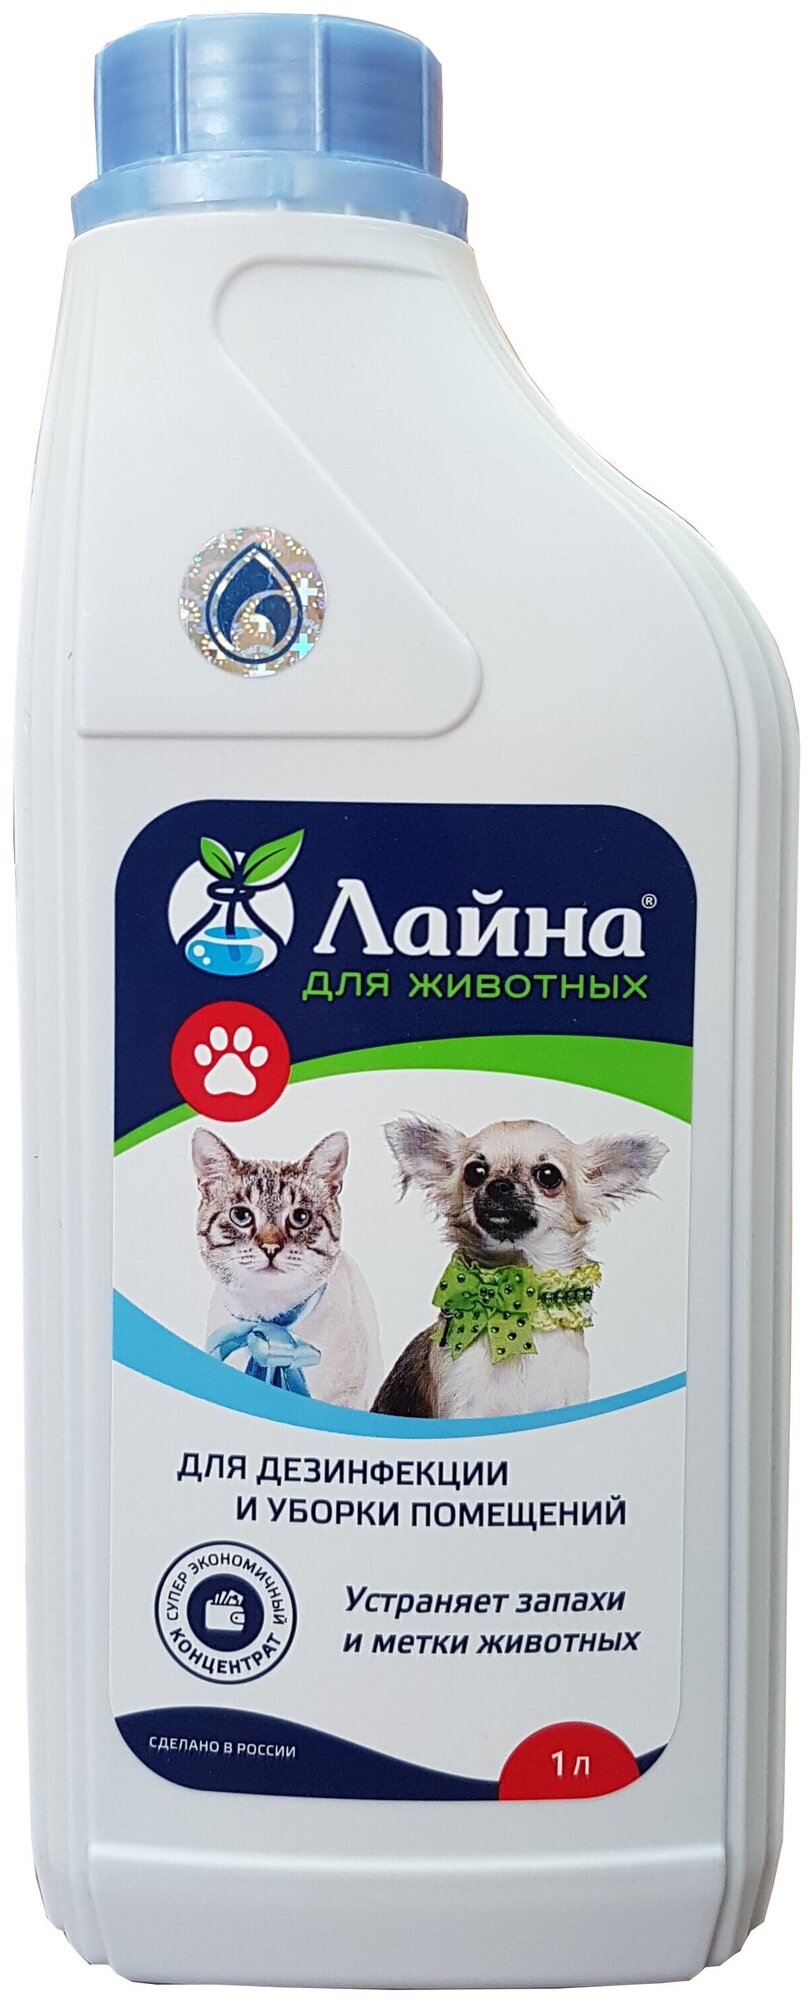 "Лайна" средство для дезинфекции и устранения неприятных запахов и меток животных 1000мл(концентрат)